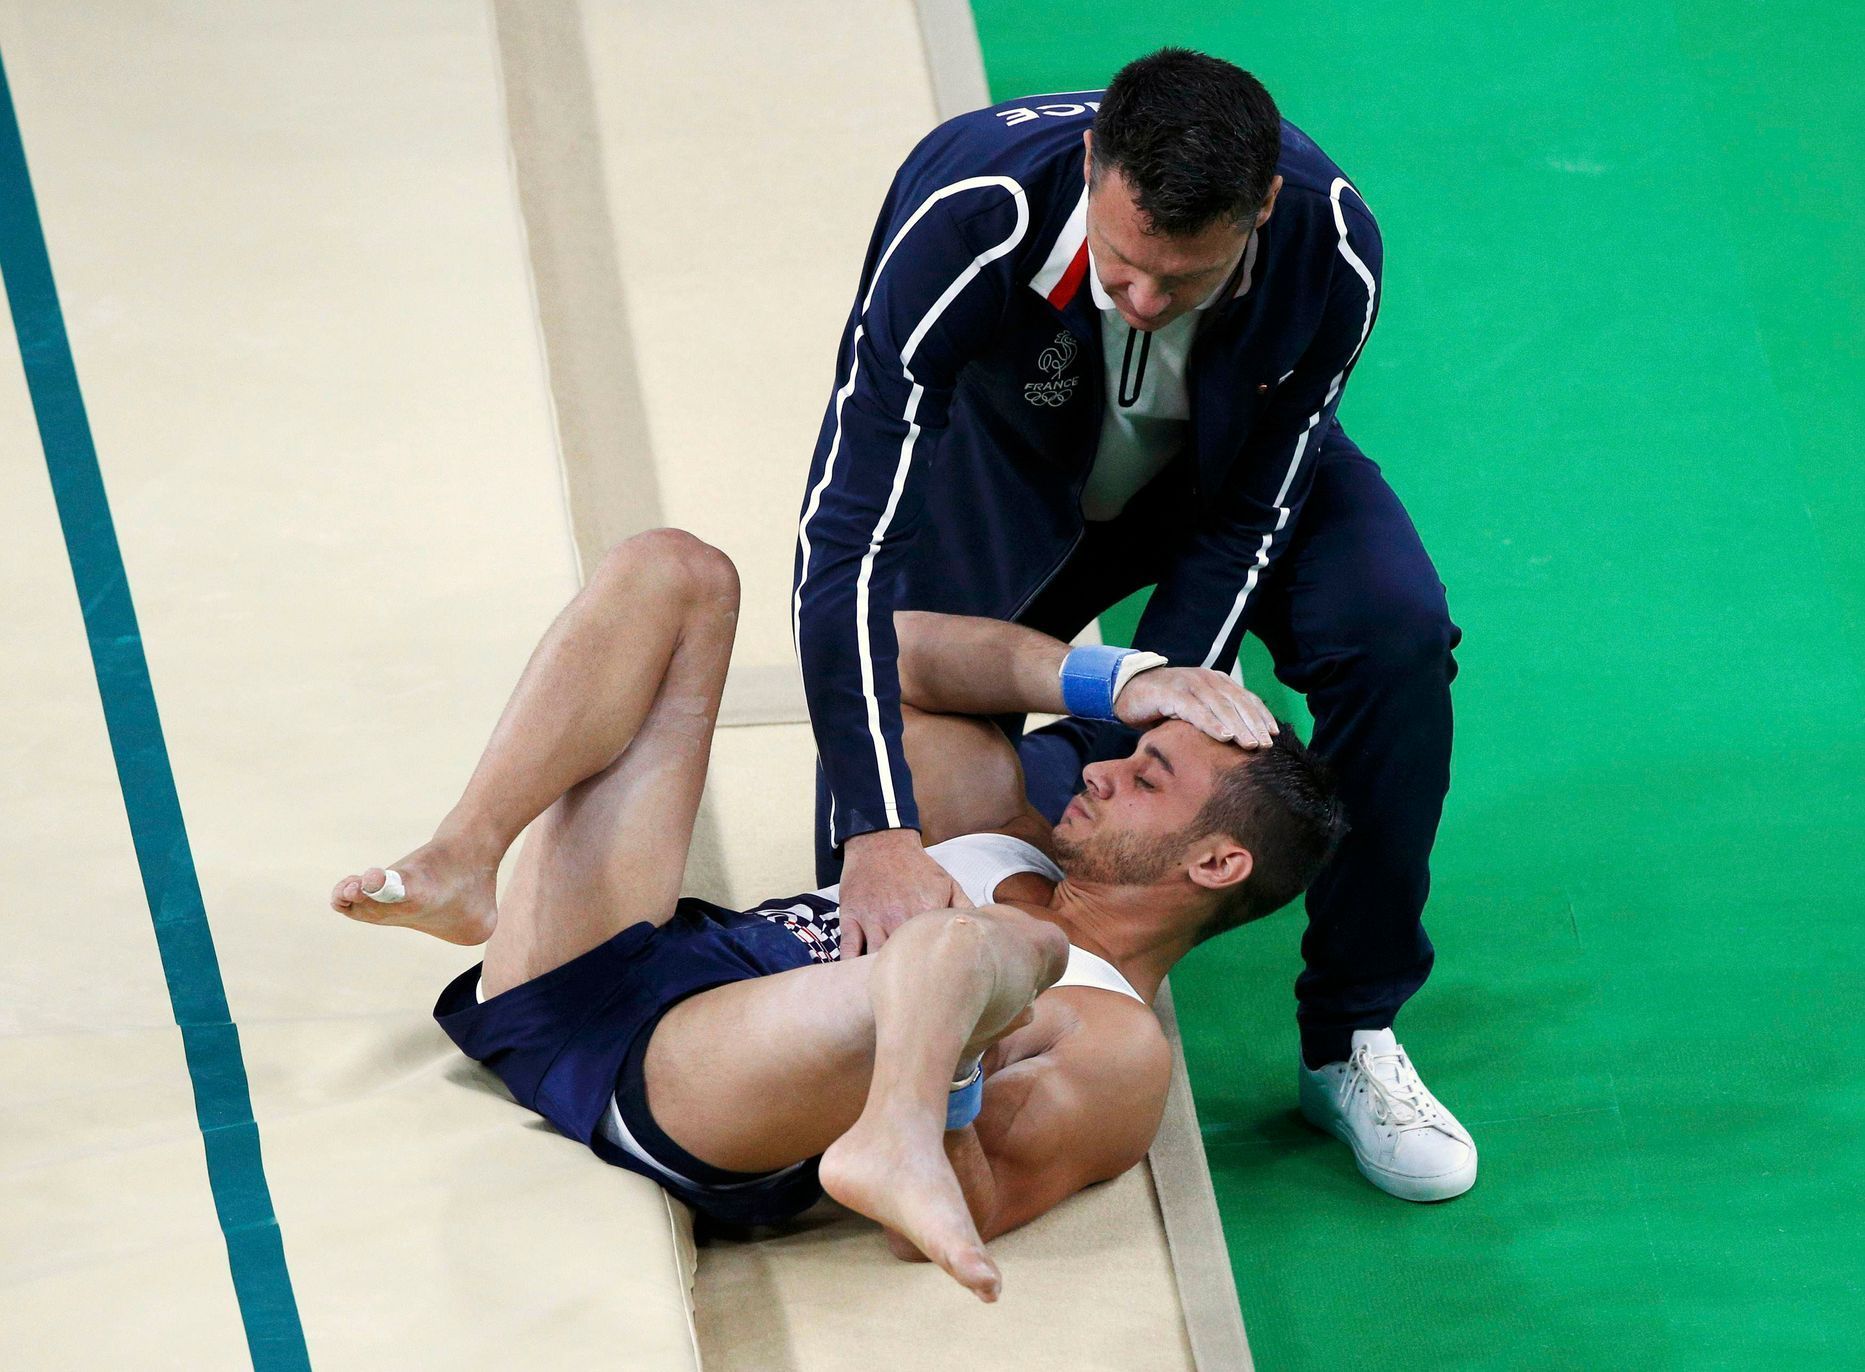 OH Rio 2016: Gymnasta Samir Ait Said, zlomená noha, přeskok